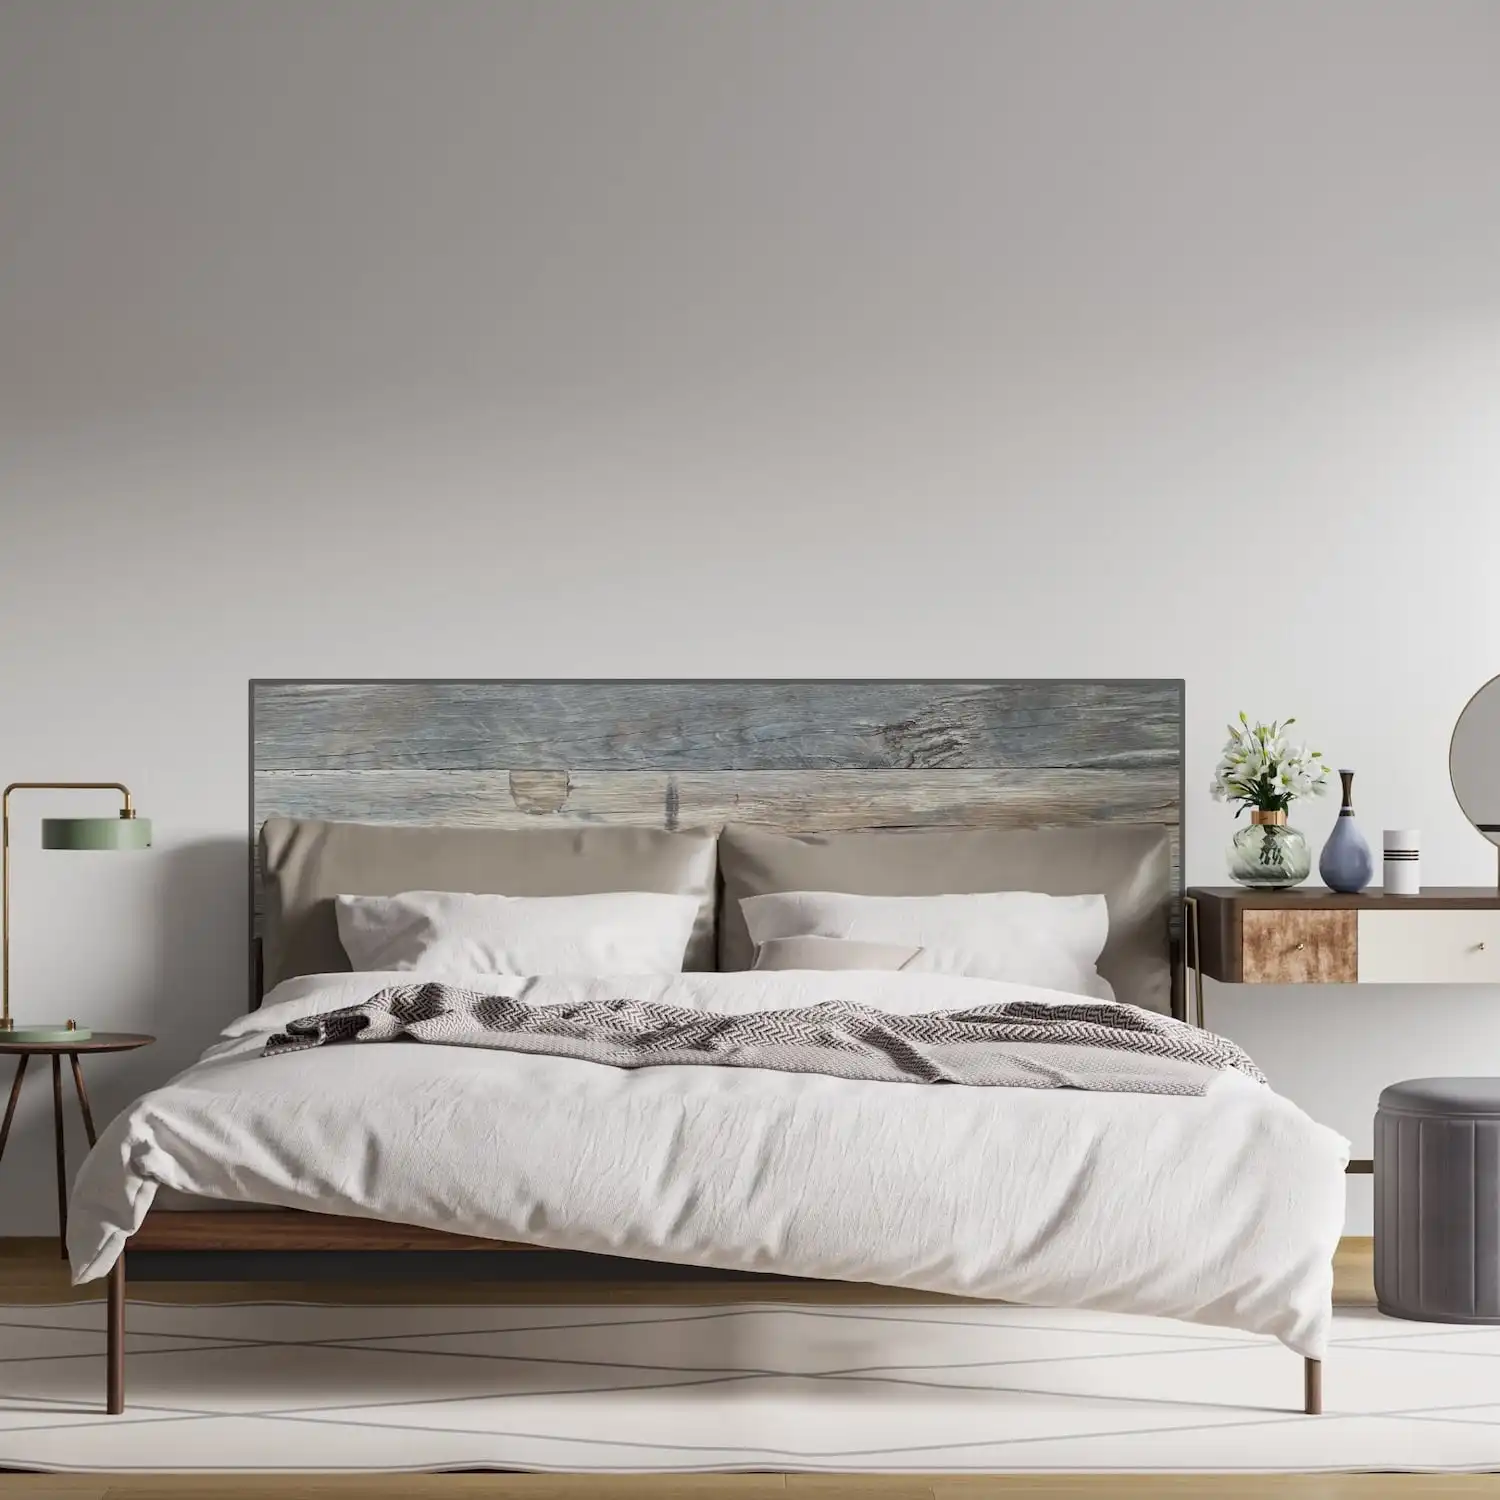  Chambre minimaliste moderne avec un lit soigneusement fait, une grande œuvre d'art au-dessus de la tête de lit et un mobilier de chevet simple. 